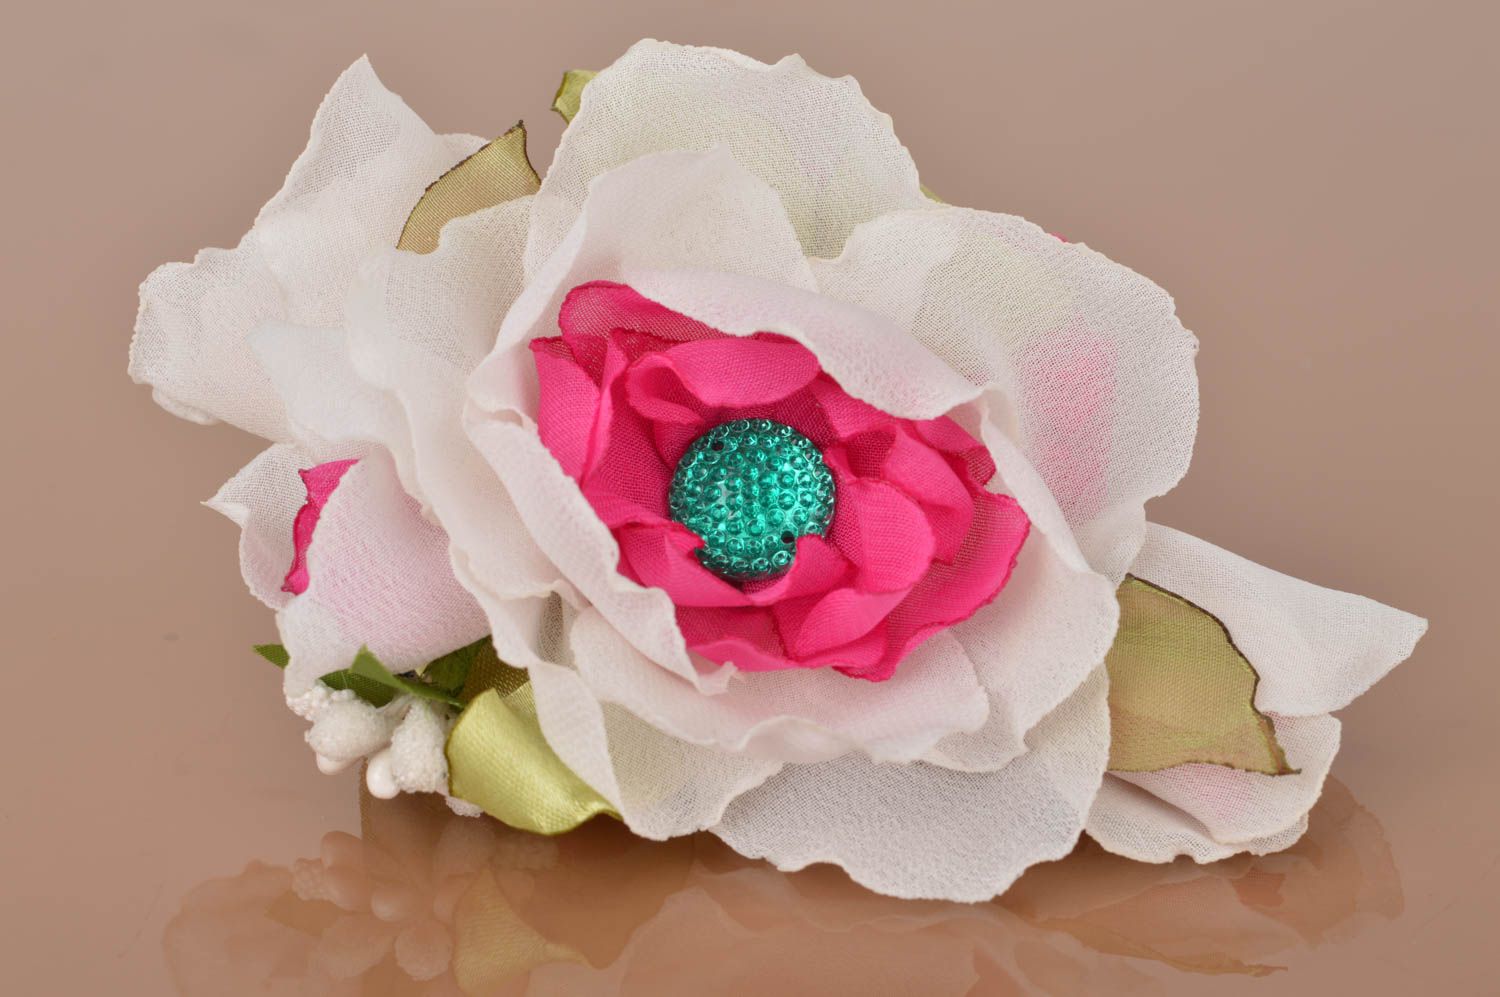 Broche artesanal original de chifón con forma de flor voluminosa de autor  foto 2